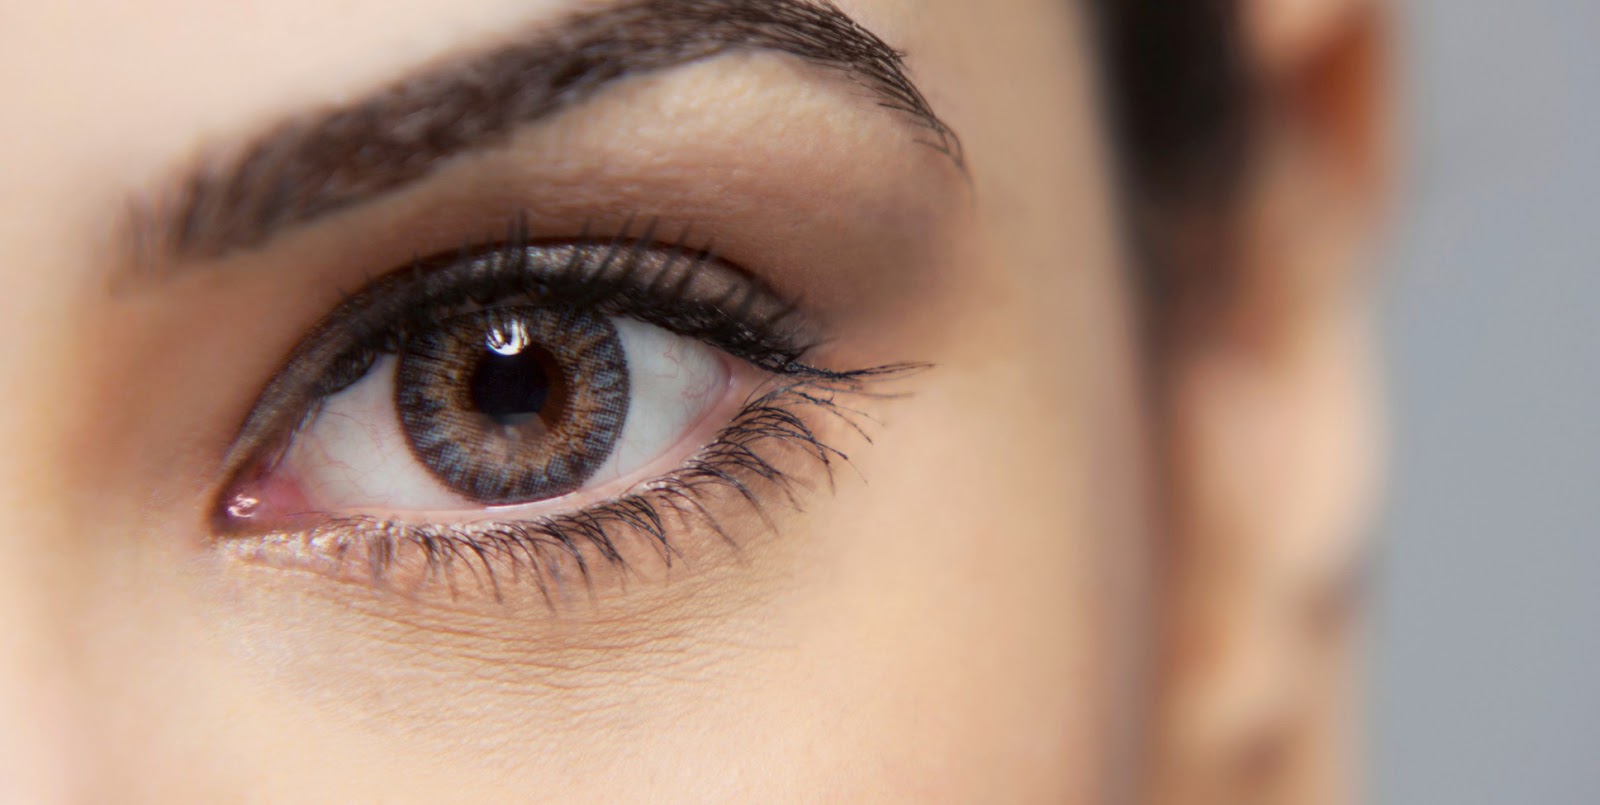 Ways to Keep Eyes Healthy